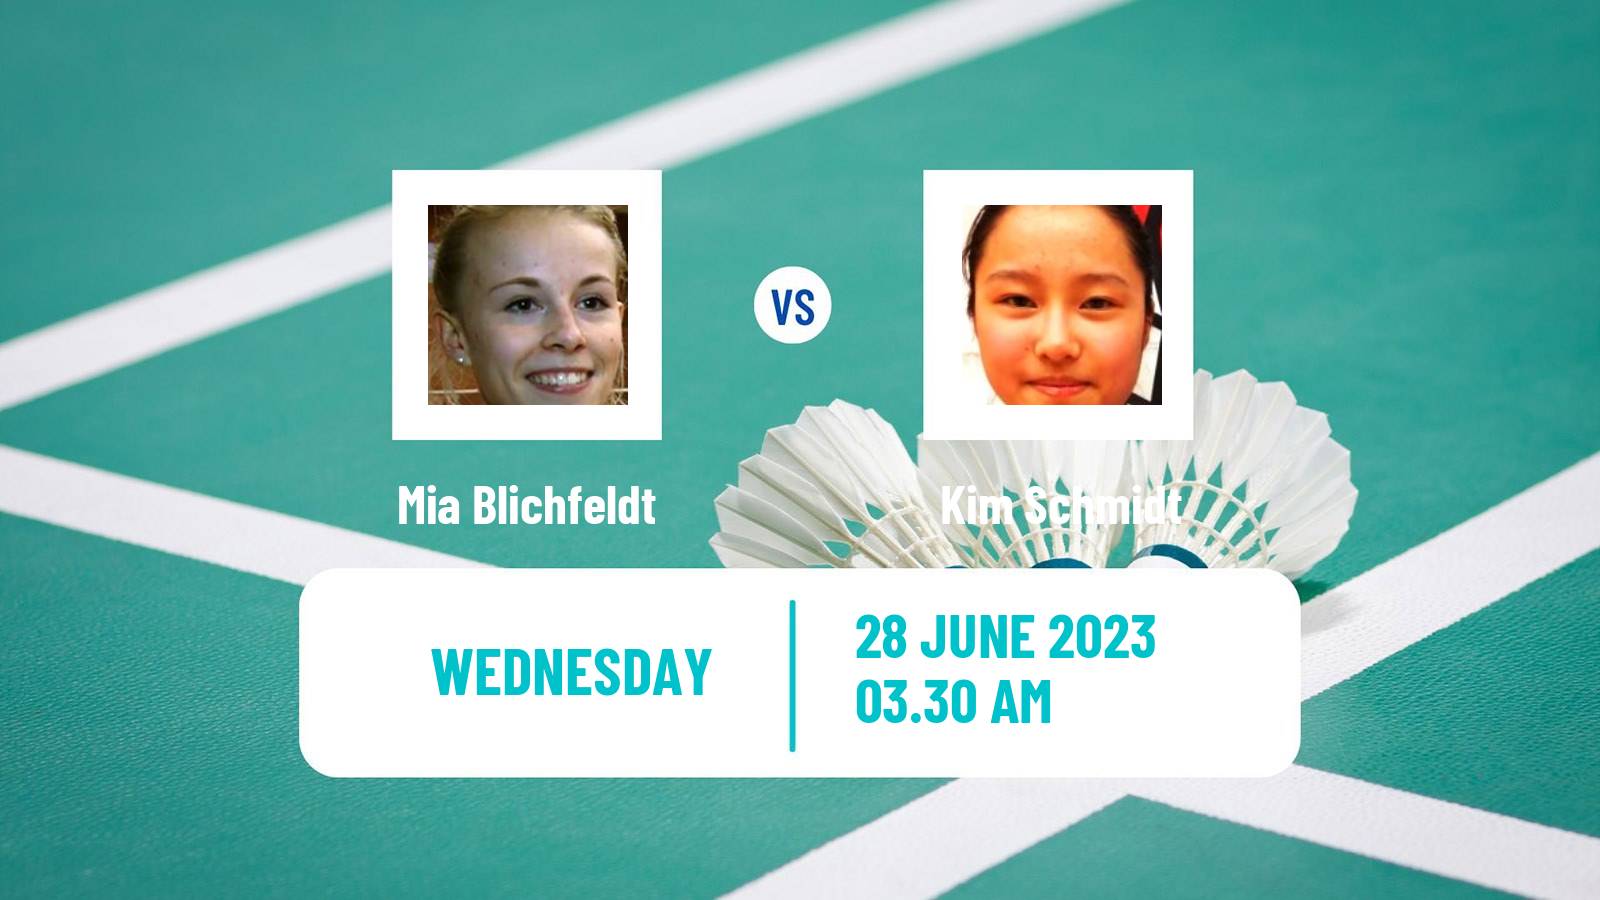 Badminton BWF European Games Women Mia Blichfeldt - Kim Schmidt